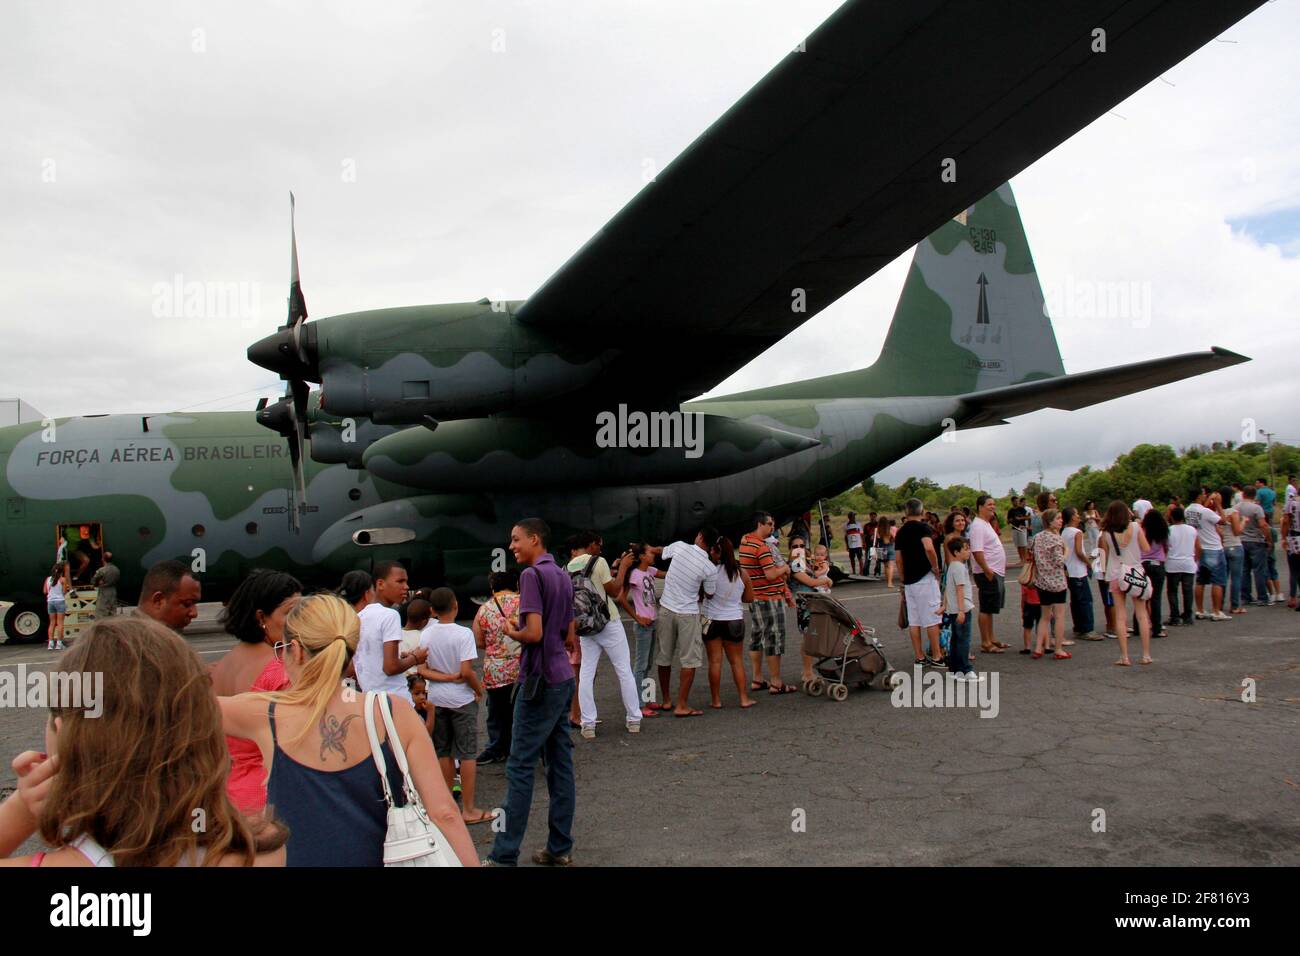 salvador, bahia / brasilien - 10. november 2012: Hercules-Flugzeuge von Força Aerea Brasileira werden auf der Basis von Aerea de Salvador gesehen. *** Lokale Bildunterschrift * Stockfoto